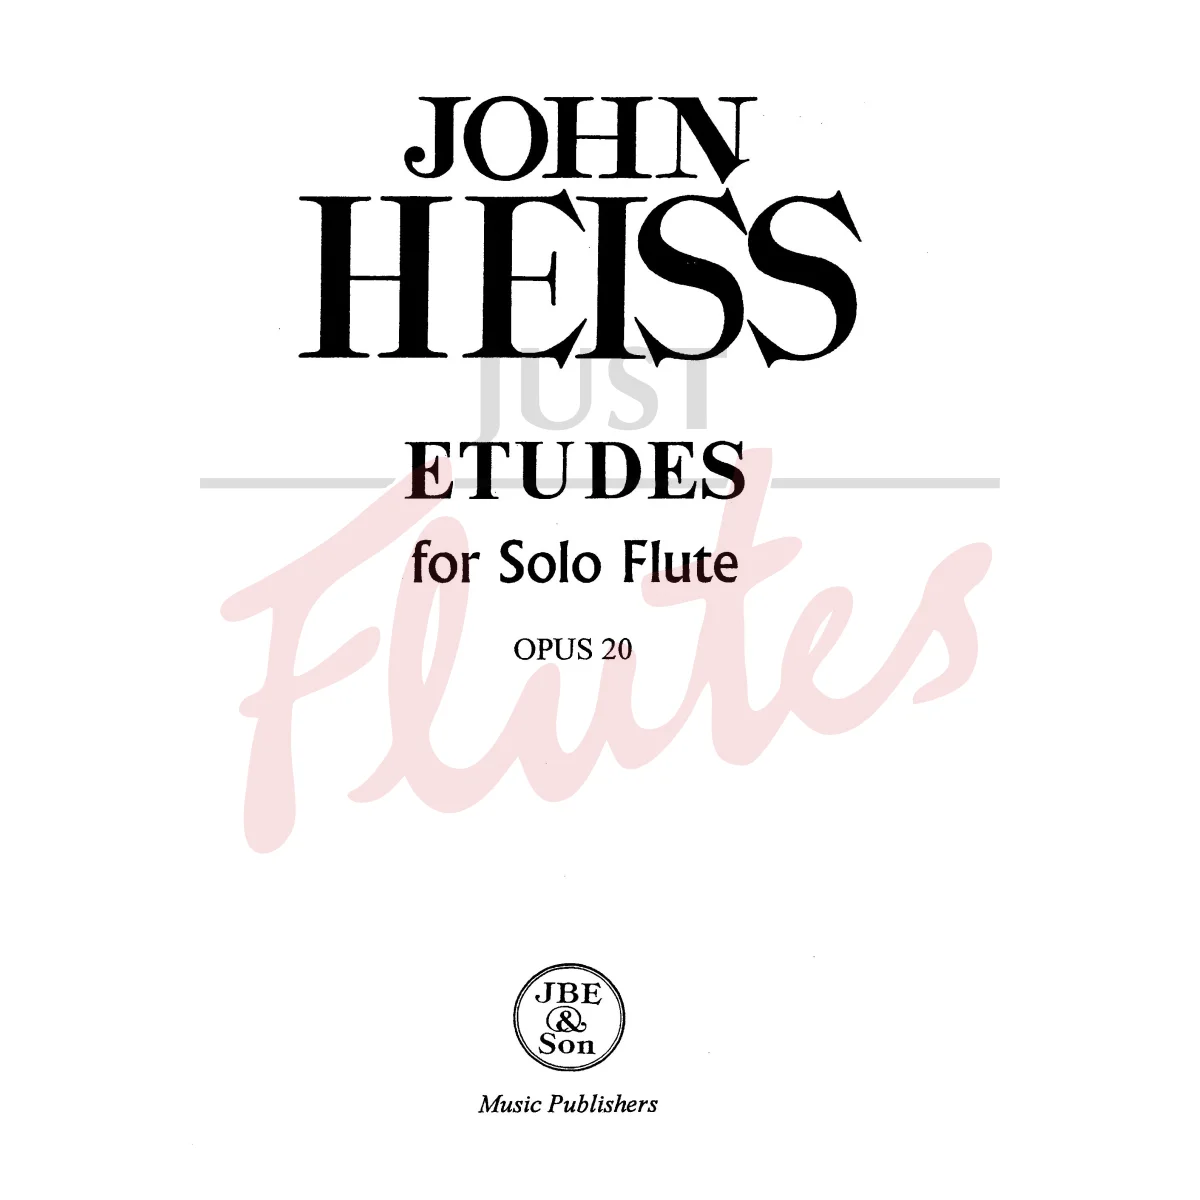 Etudes for Solo Flute